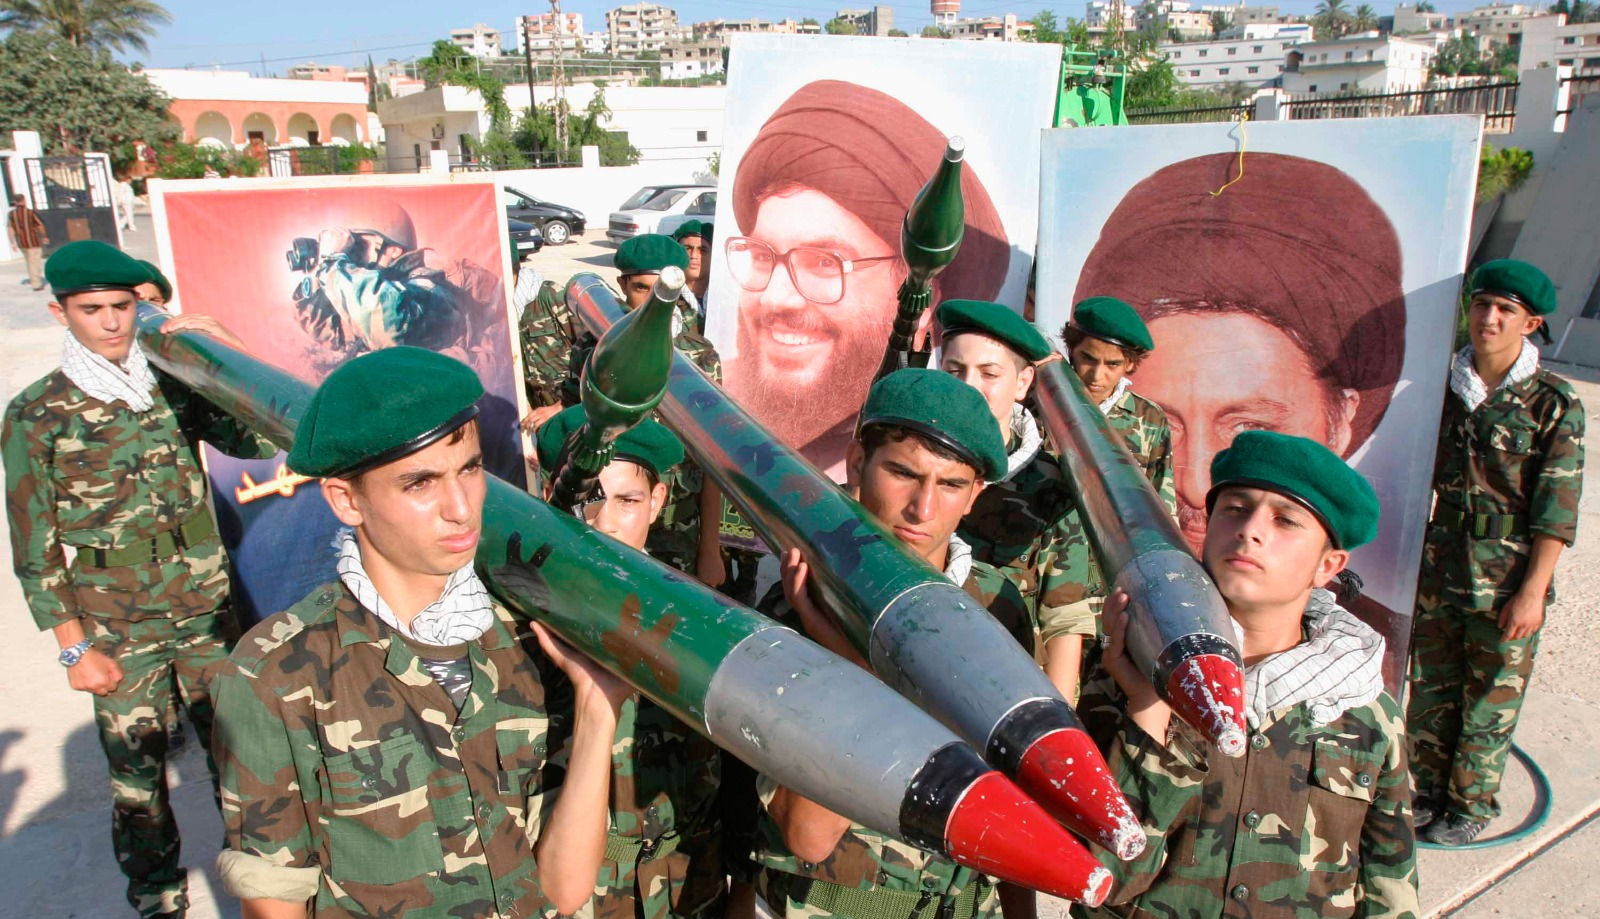 أنصار حزب الله يحملون مجسمات لصواريخ في الذكرى الأولى لحرب الـ2006 أمام صور للأمين العام لحزب الله حسن نصر الله. 22 يوليو 2007